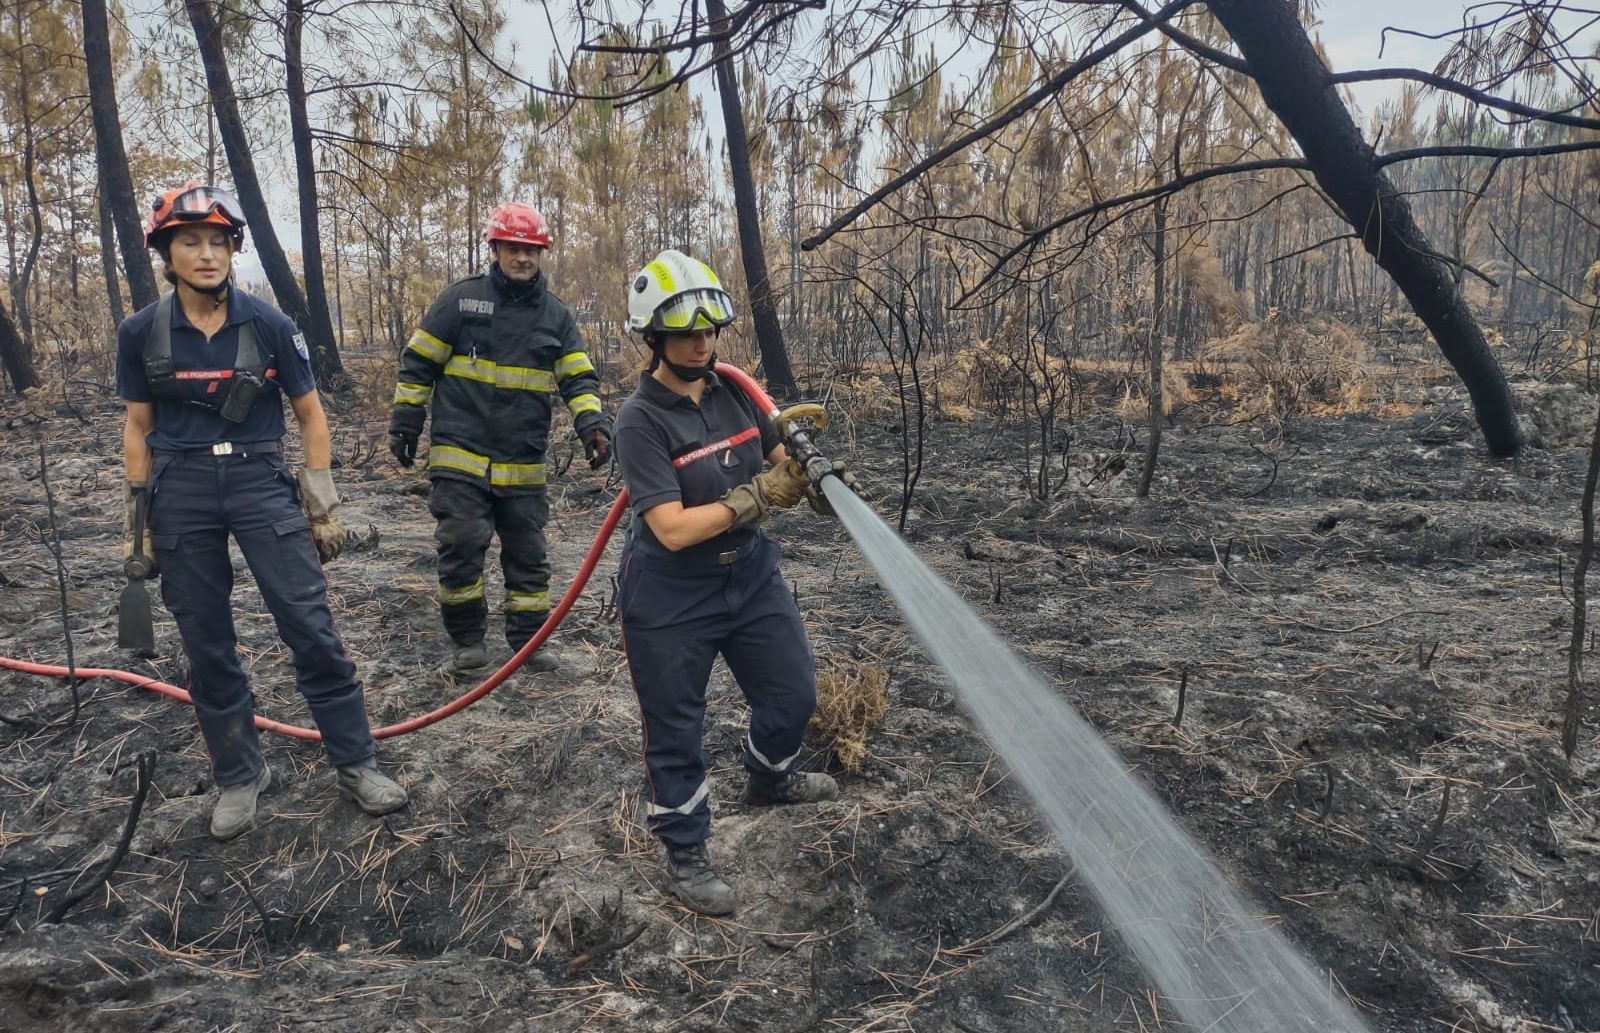 Modulul naţional de stins incendii execută operaţiuni în estul localităţii Belin-Beliet, Franţa, în cadrul sectorului 2 de intervenţie, sub coordonarea ofiţerului de legătură al ţării gazdă/ Foto: Facebook - IGSU